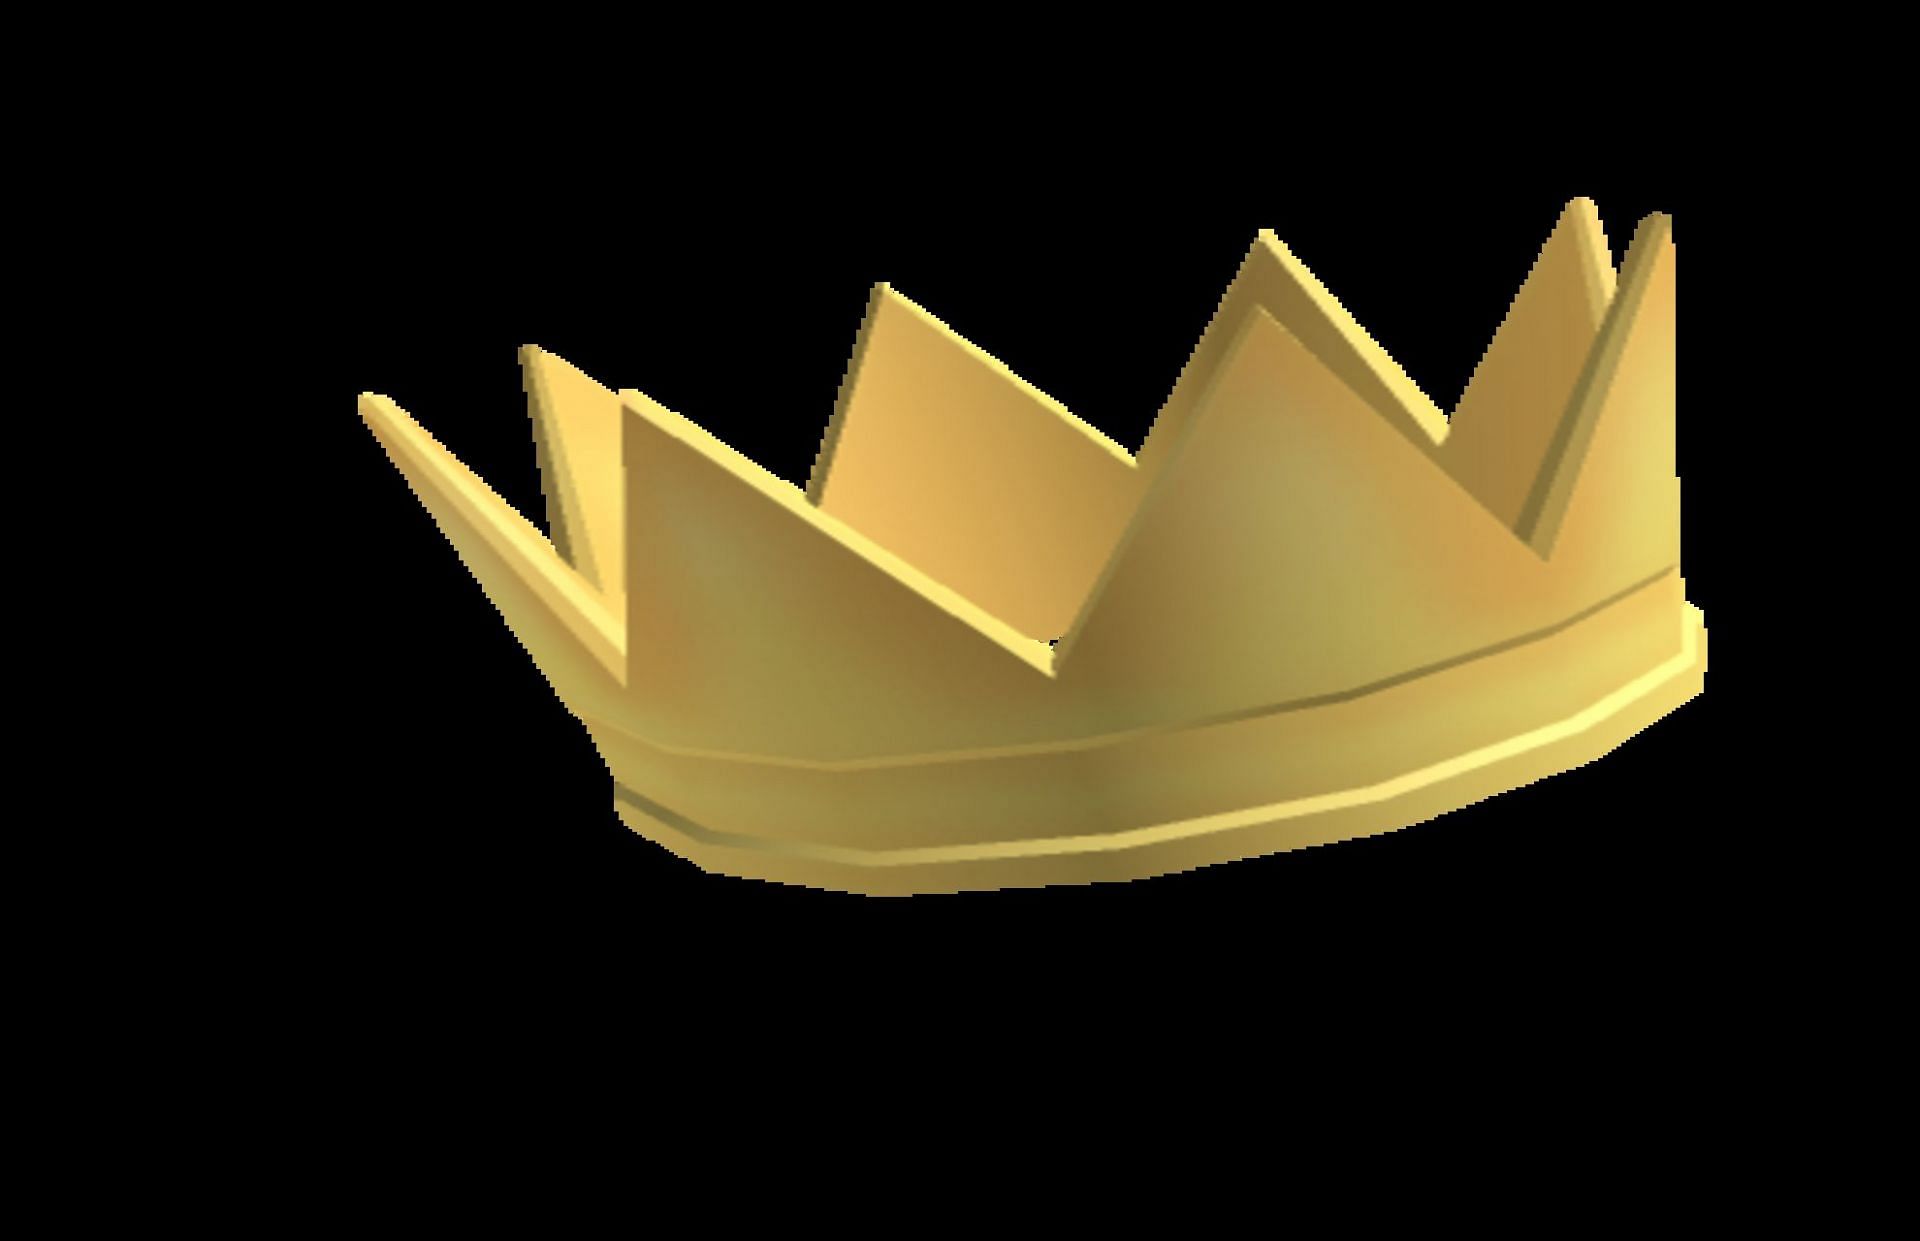 The royal crown (Image via Roblox)